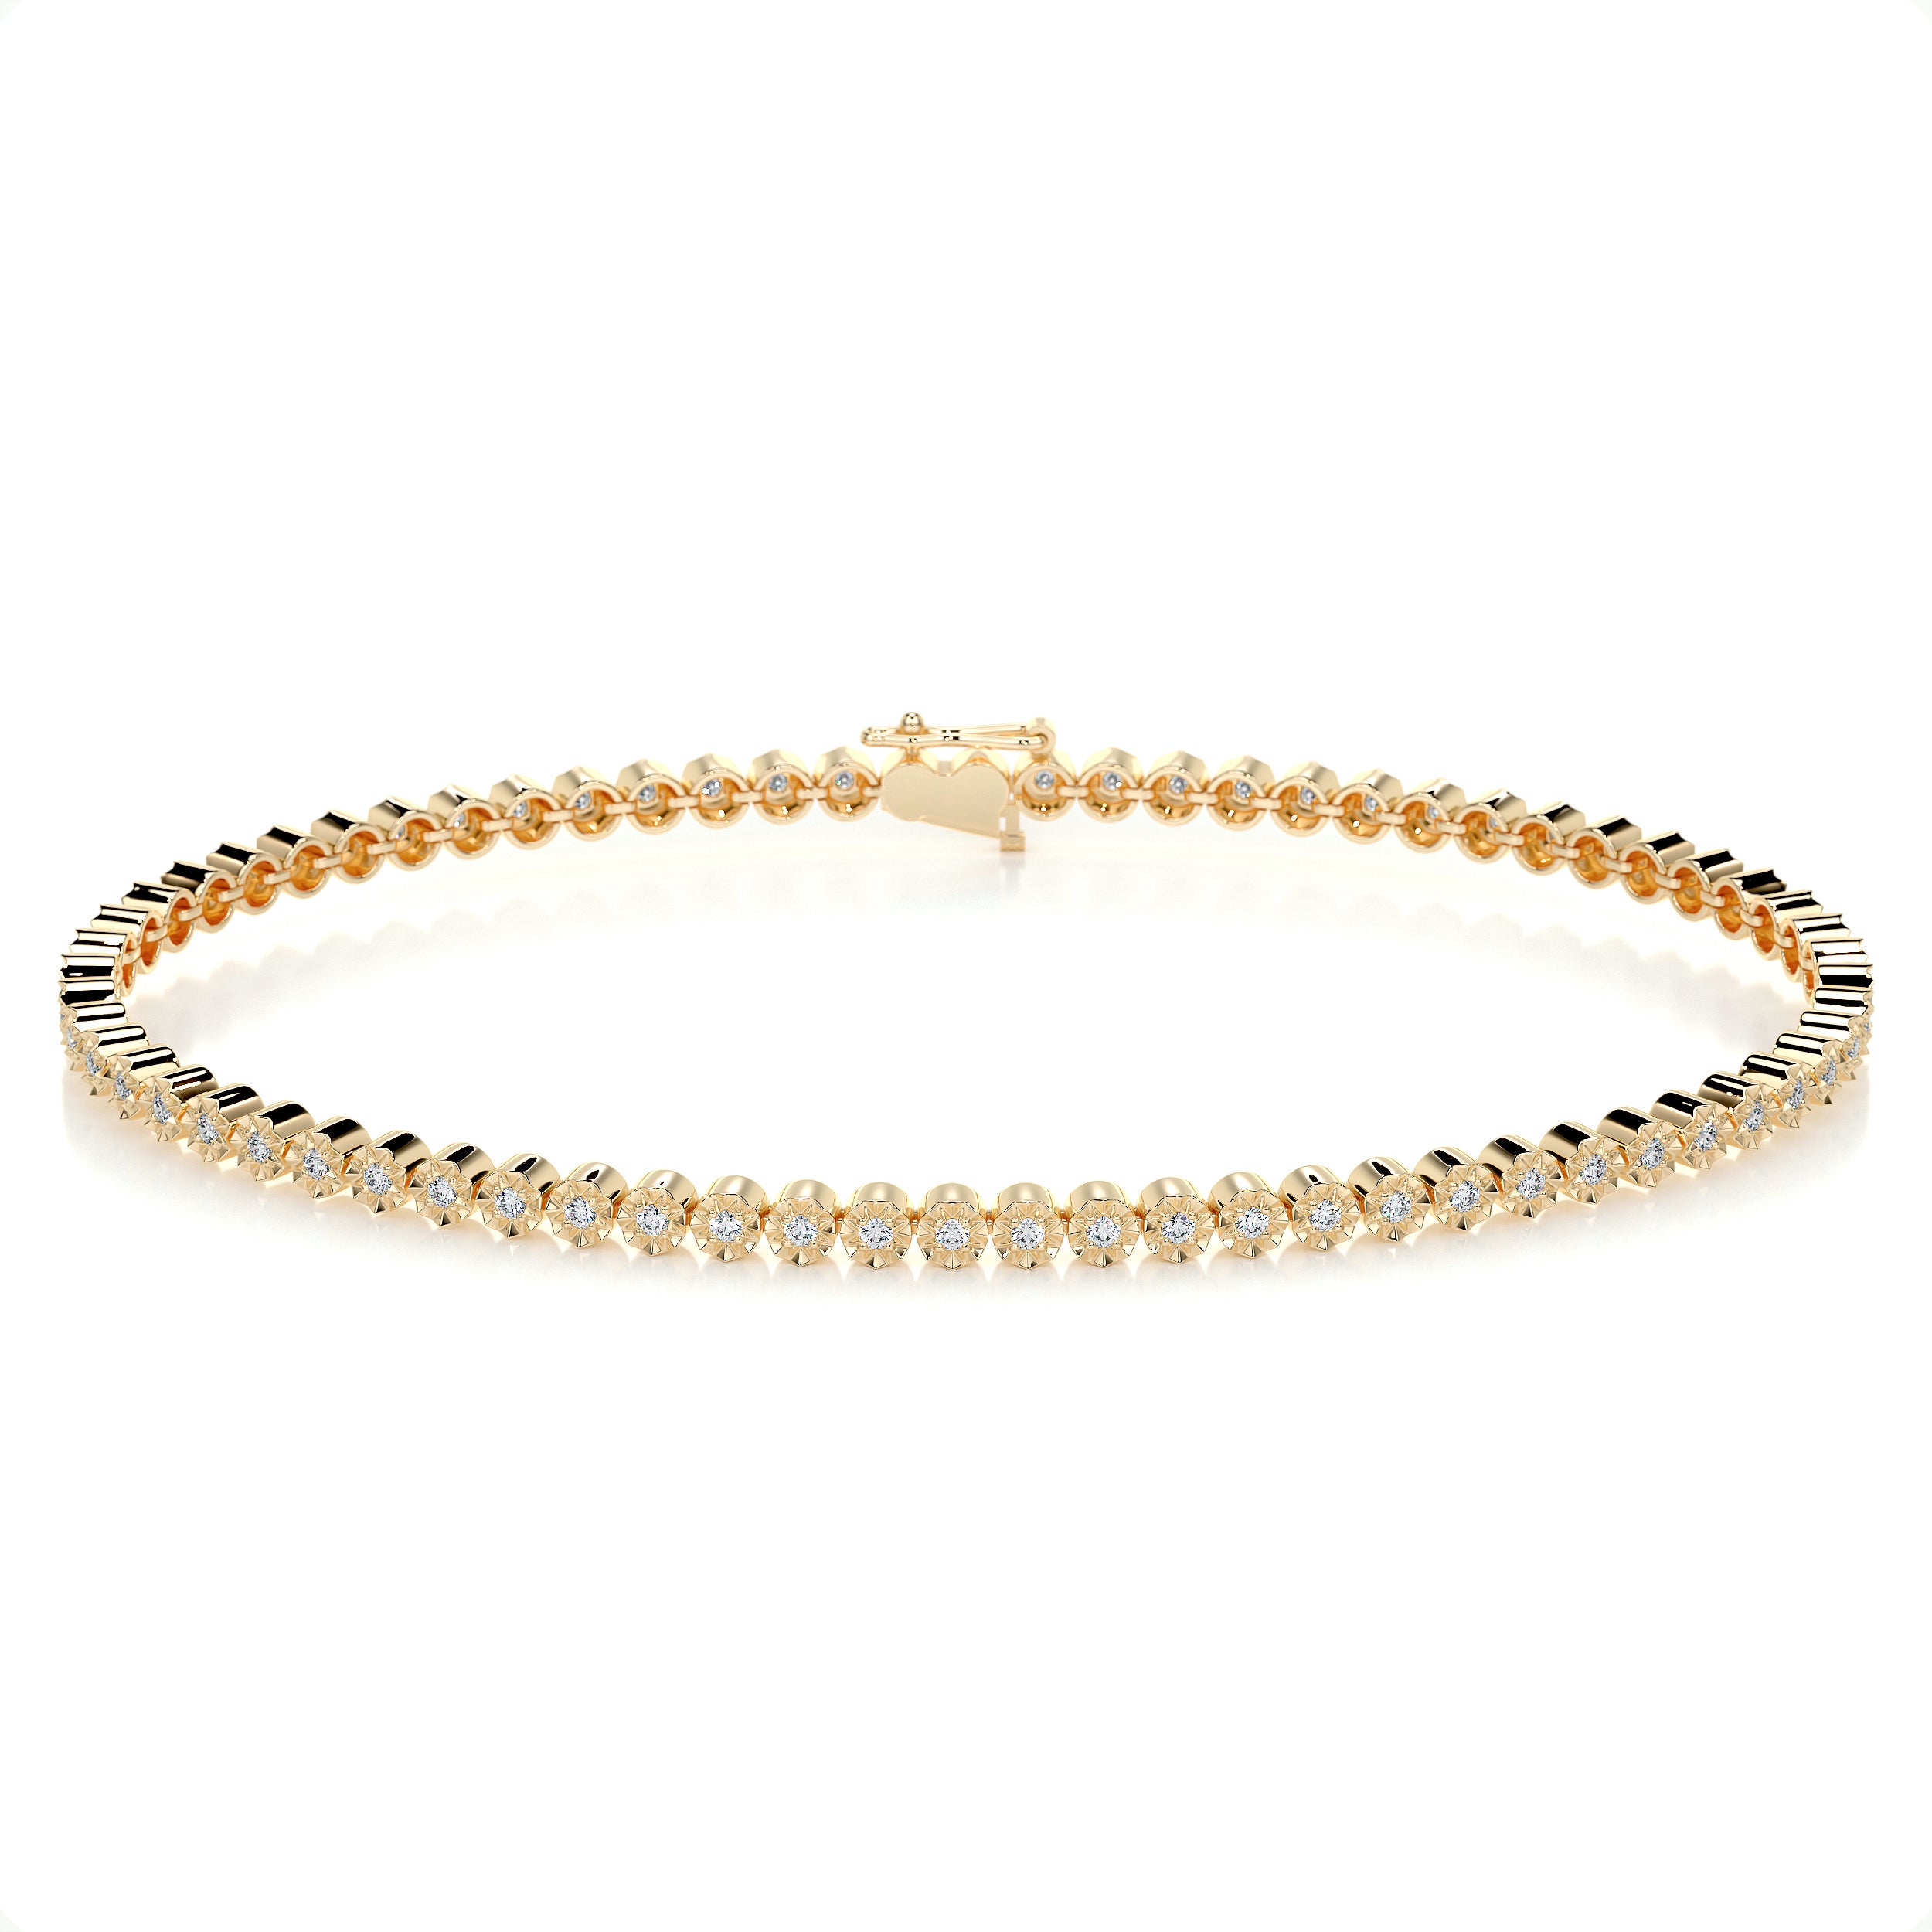 Ingrid Tennis Diamond Bracelet   (0.75 Carat) -18K Yellow Gold